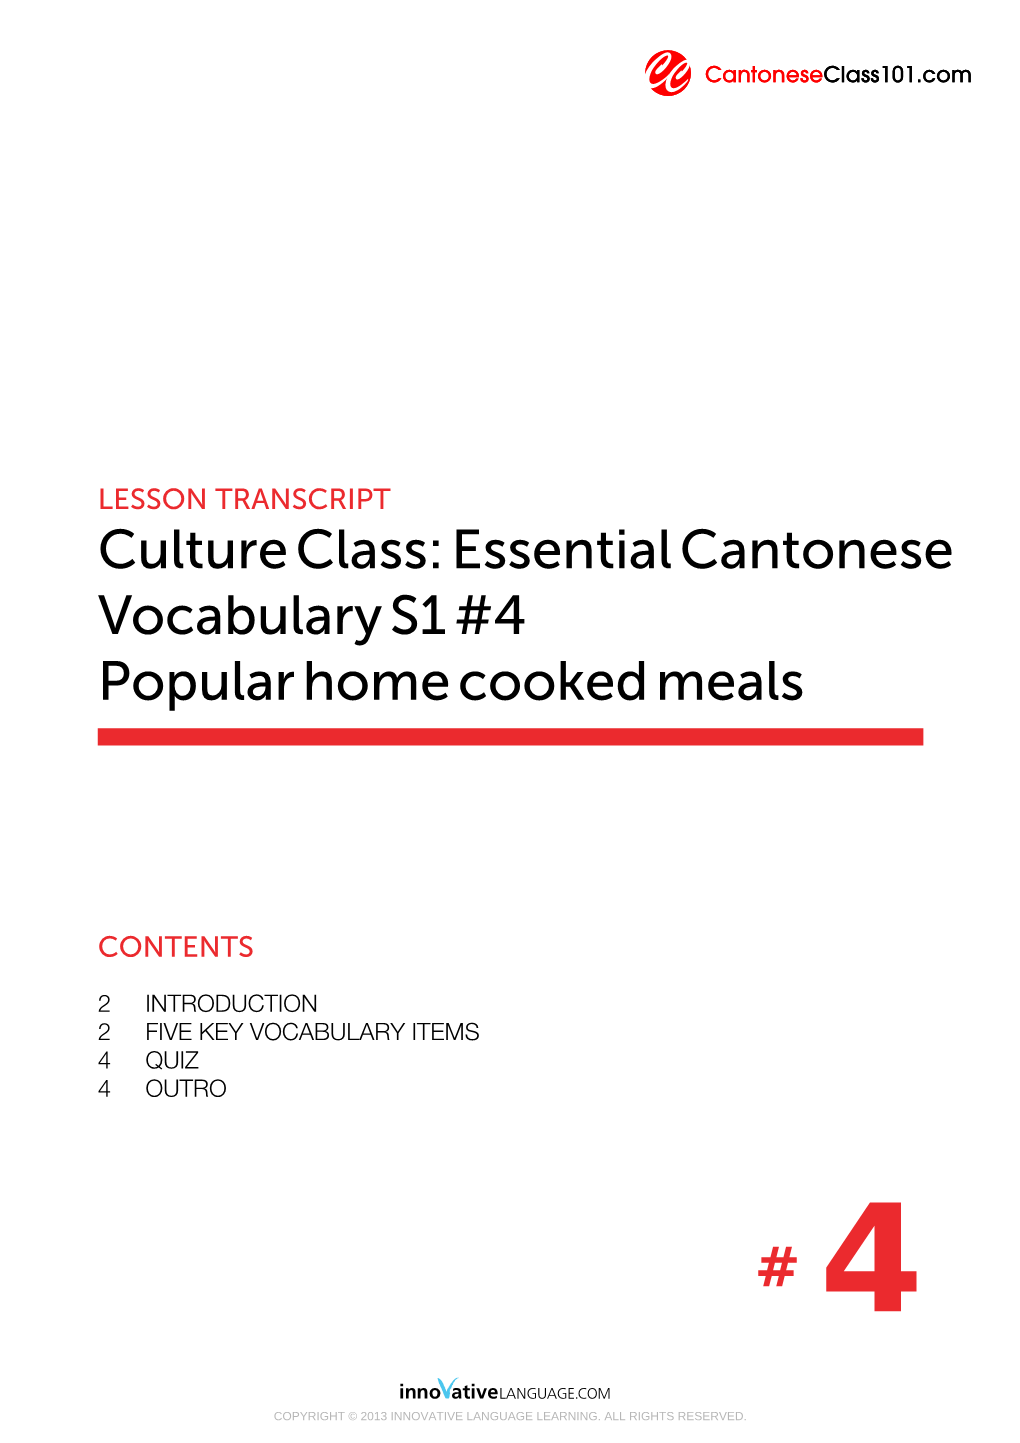 Cultureclass:Essentialcantonese